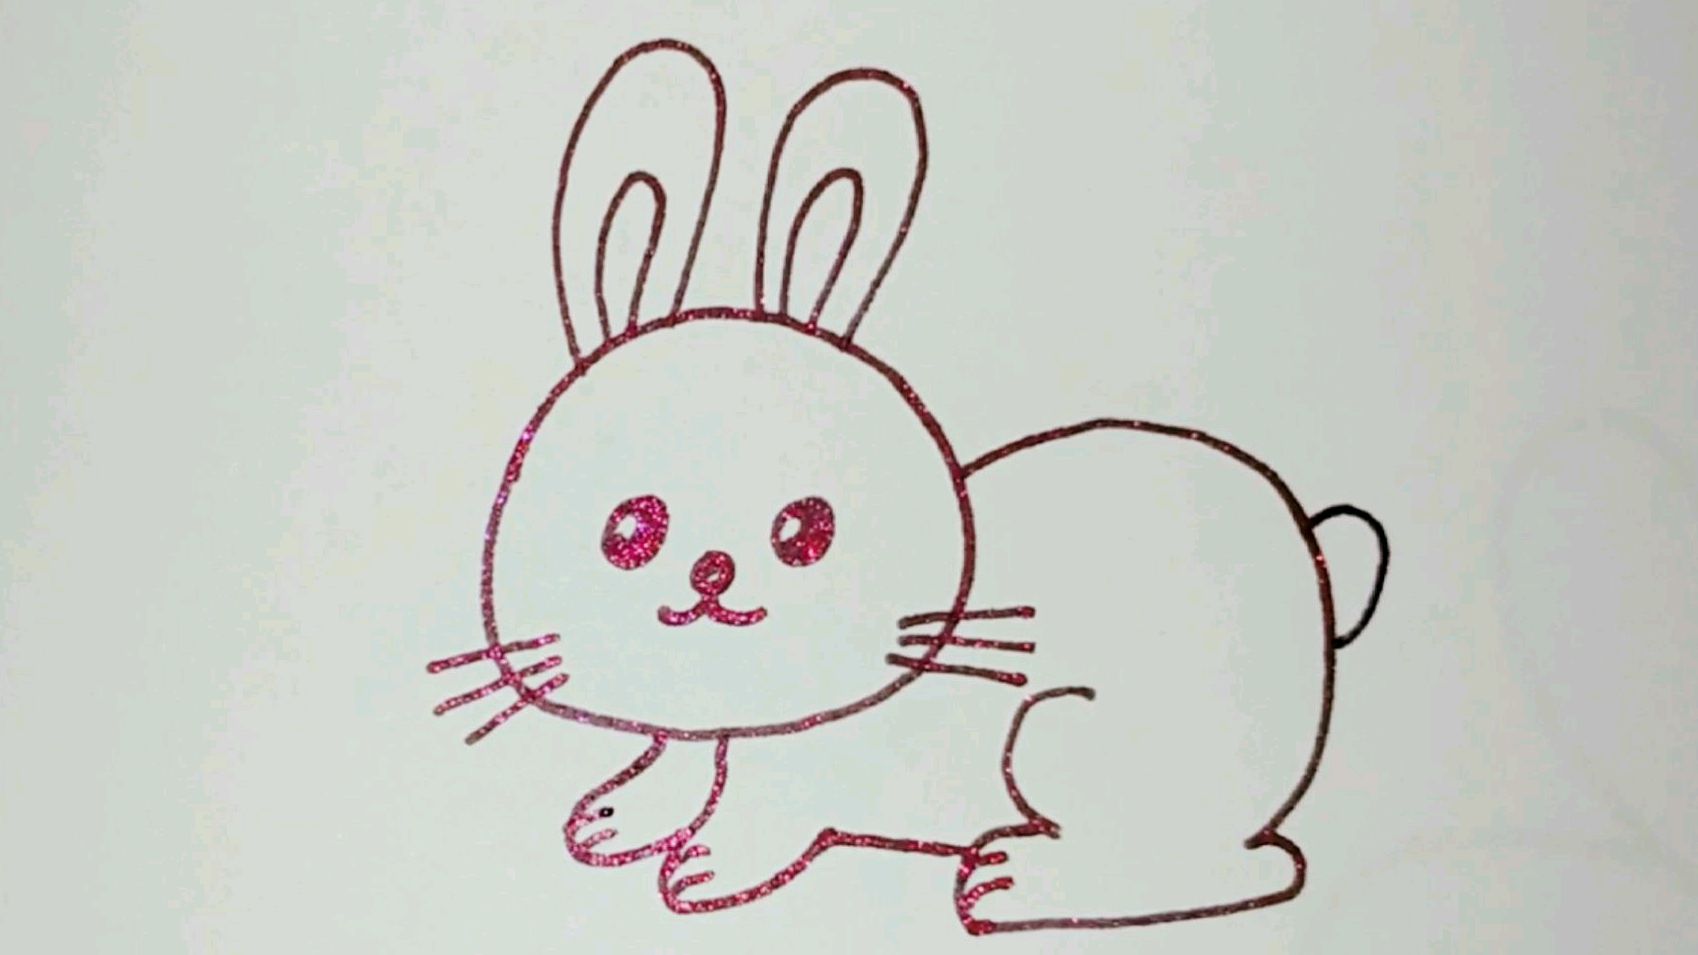 12生肖简笔画兔图片